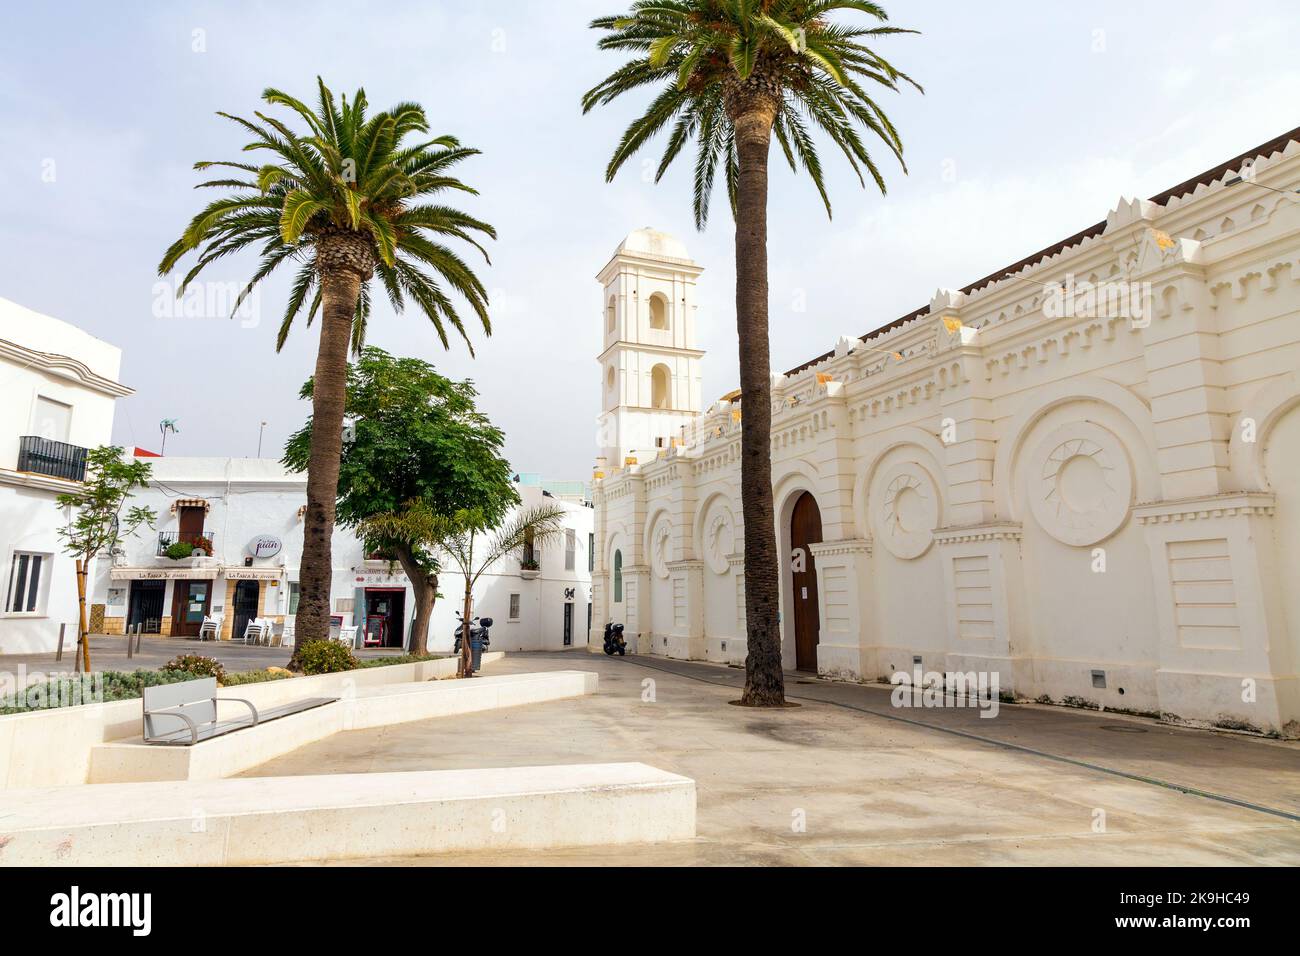 Santa Catalina Cultural Centre on Santa Catalina Square, Conil de la Frontera, Cadiz Province, Spain Stock Photo